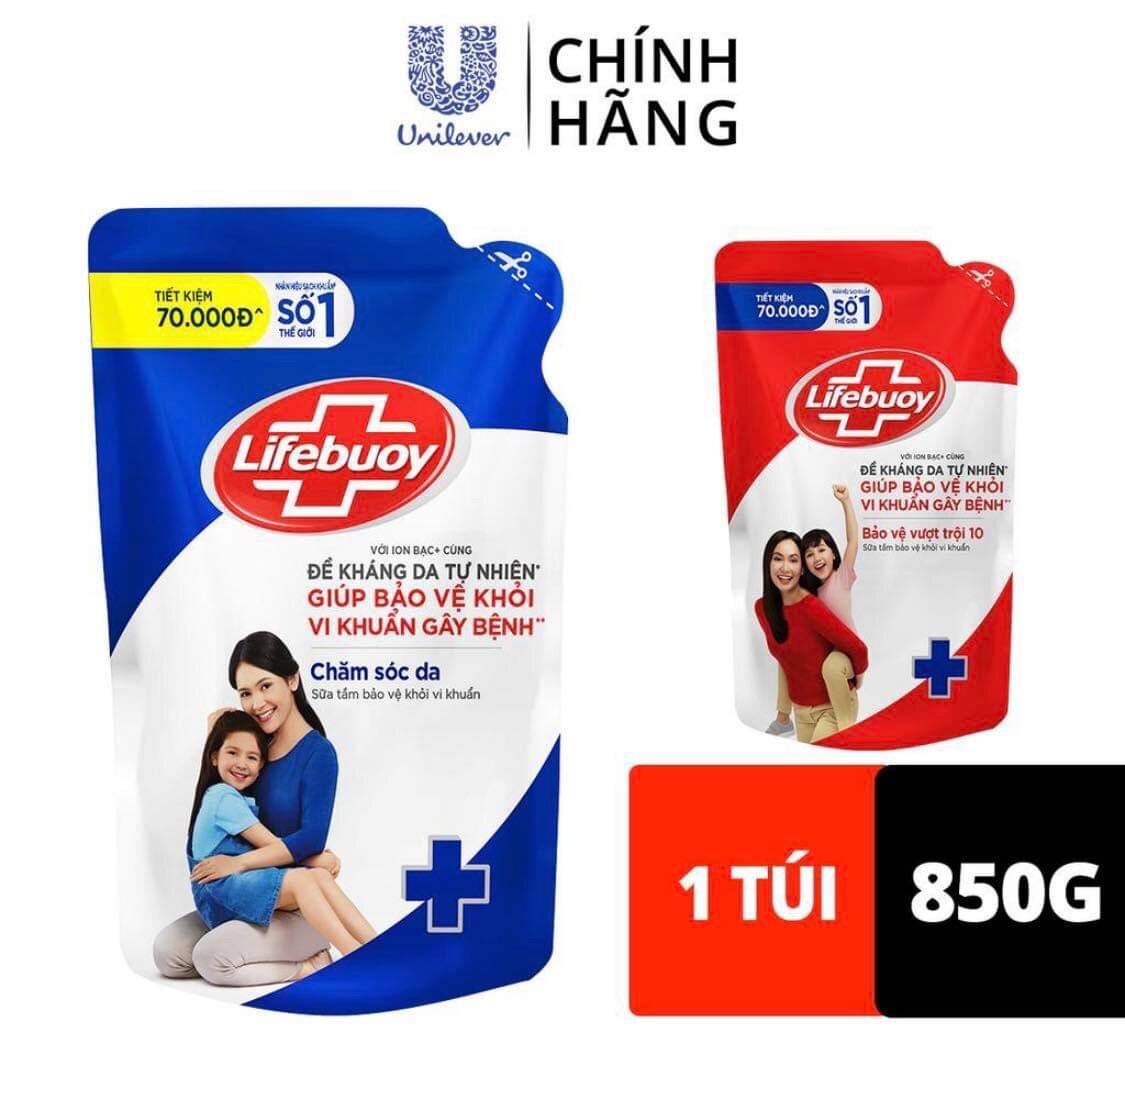 Sữa tắm Lifebuoy túi 850g Bảo vệ vượt trội 10 giúp bảo vệ khỏi 99.9% vi khuẩn và ngăn ngừa vi khuẩn trên da giá rẻ